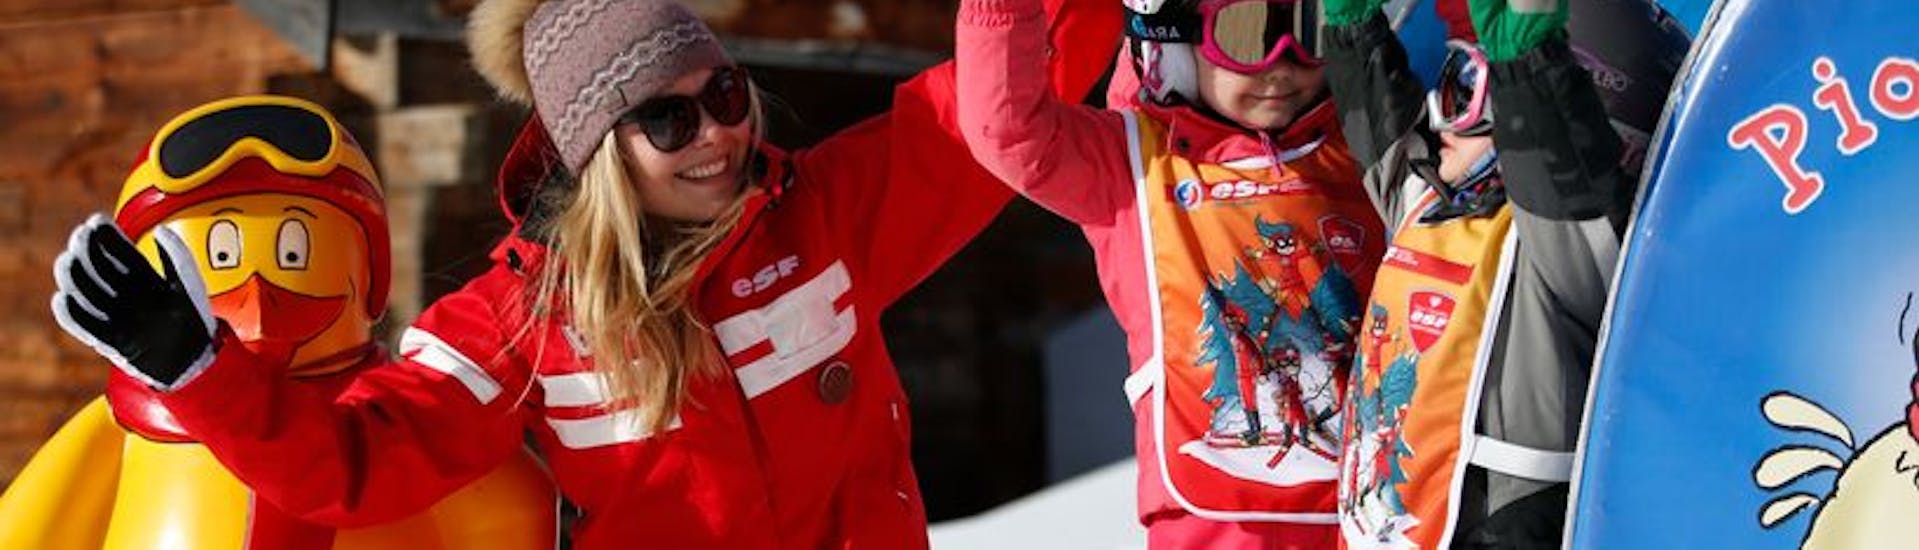 Le monoiteur de ski lors de Cours de ski Enfants "Piou-Piou" (3-5 ans) avec ESF les Houches.